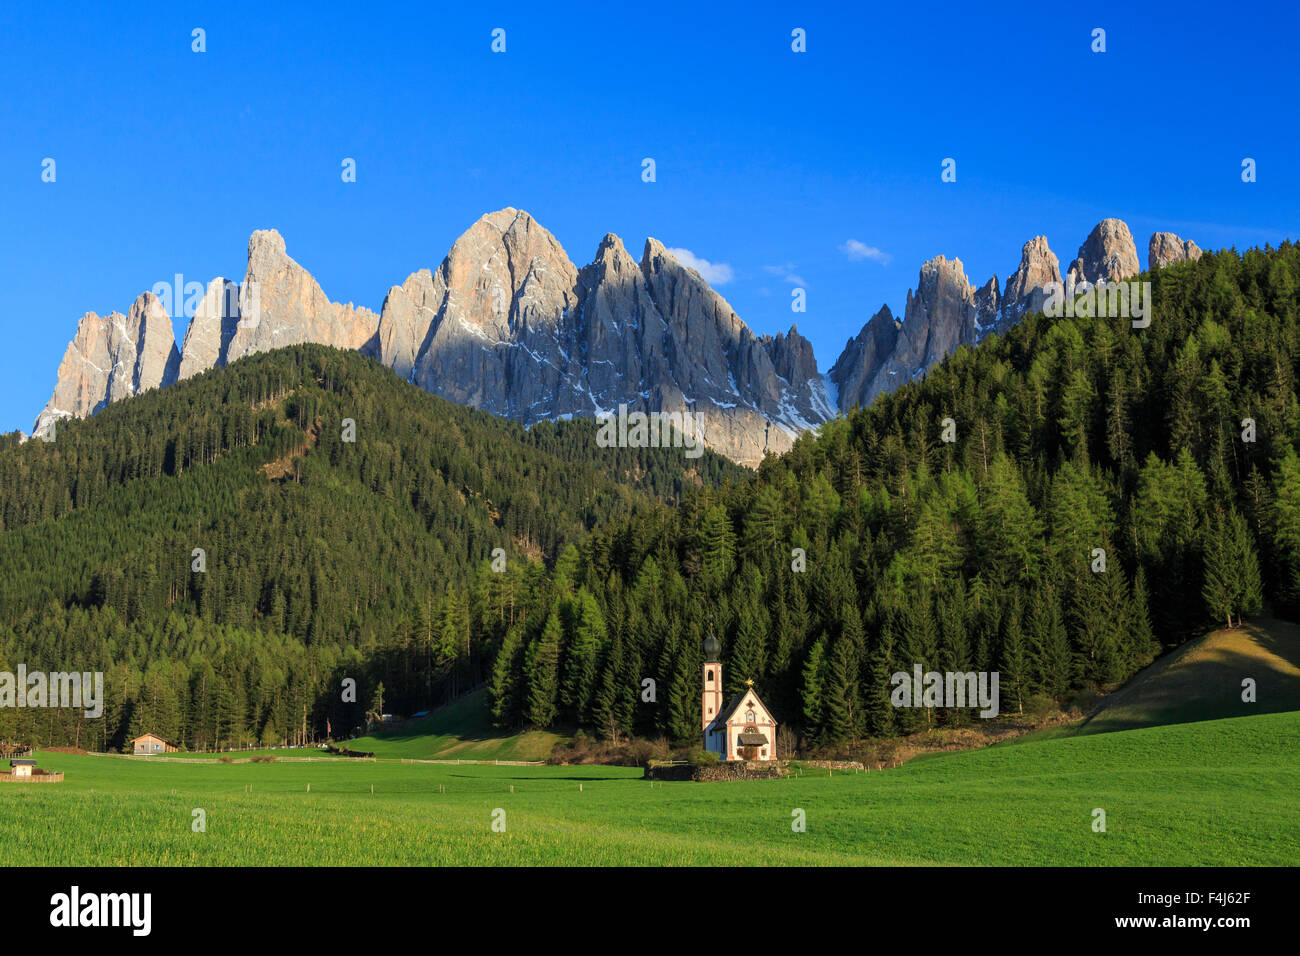 Die Kirche von Ranui und der Geisler-Gruppe im Hintergrund, St. Magdalena, Villnösser Tal, Dolomiten, Südtirol, Italien, Europa Stockfoto